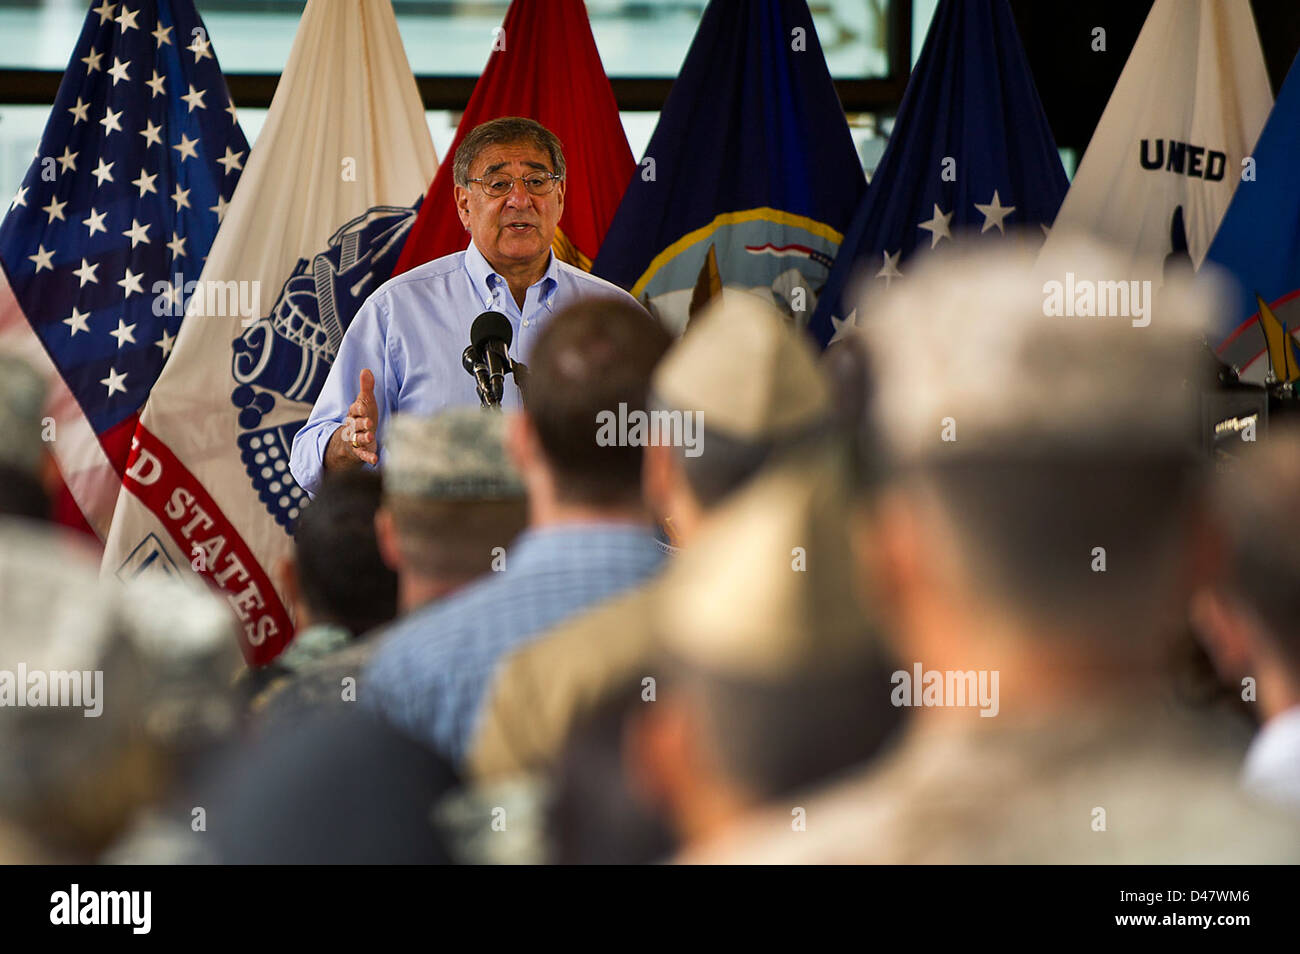 Der Pressesprecher spricht für Militärangehörige und zivile Mitarbeiter in der Zentrale des US Pacific Command bei Camp h. m. Smith, Hawaii. Stockfoto